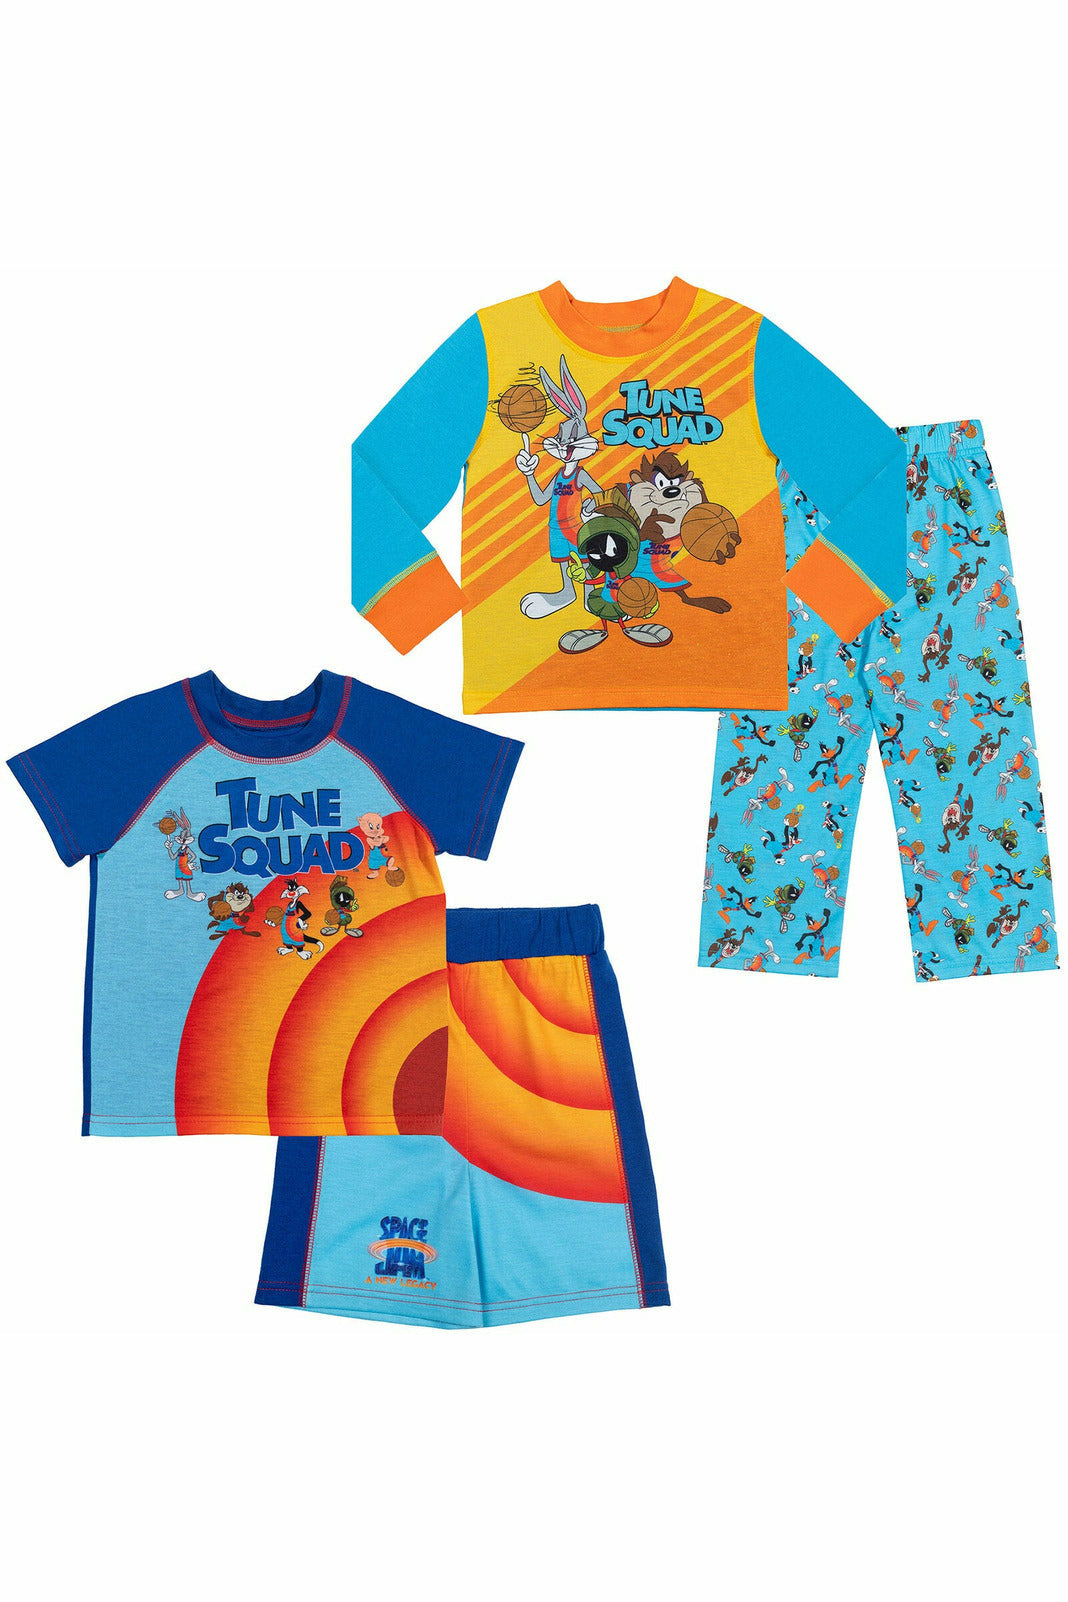 SPACE JAM Looney Tunes 4 Piece Pajama Set: Pajama Shirt Pajama Pants Pajama Shorts